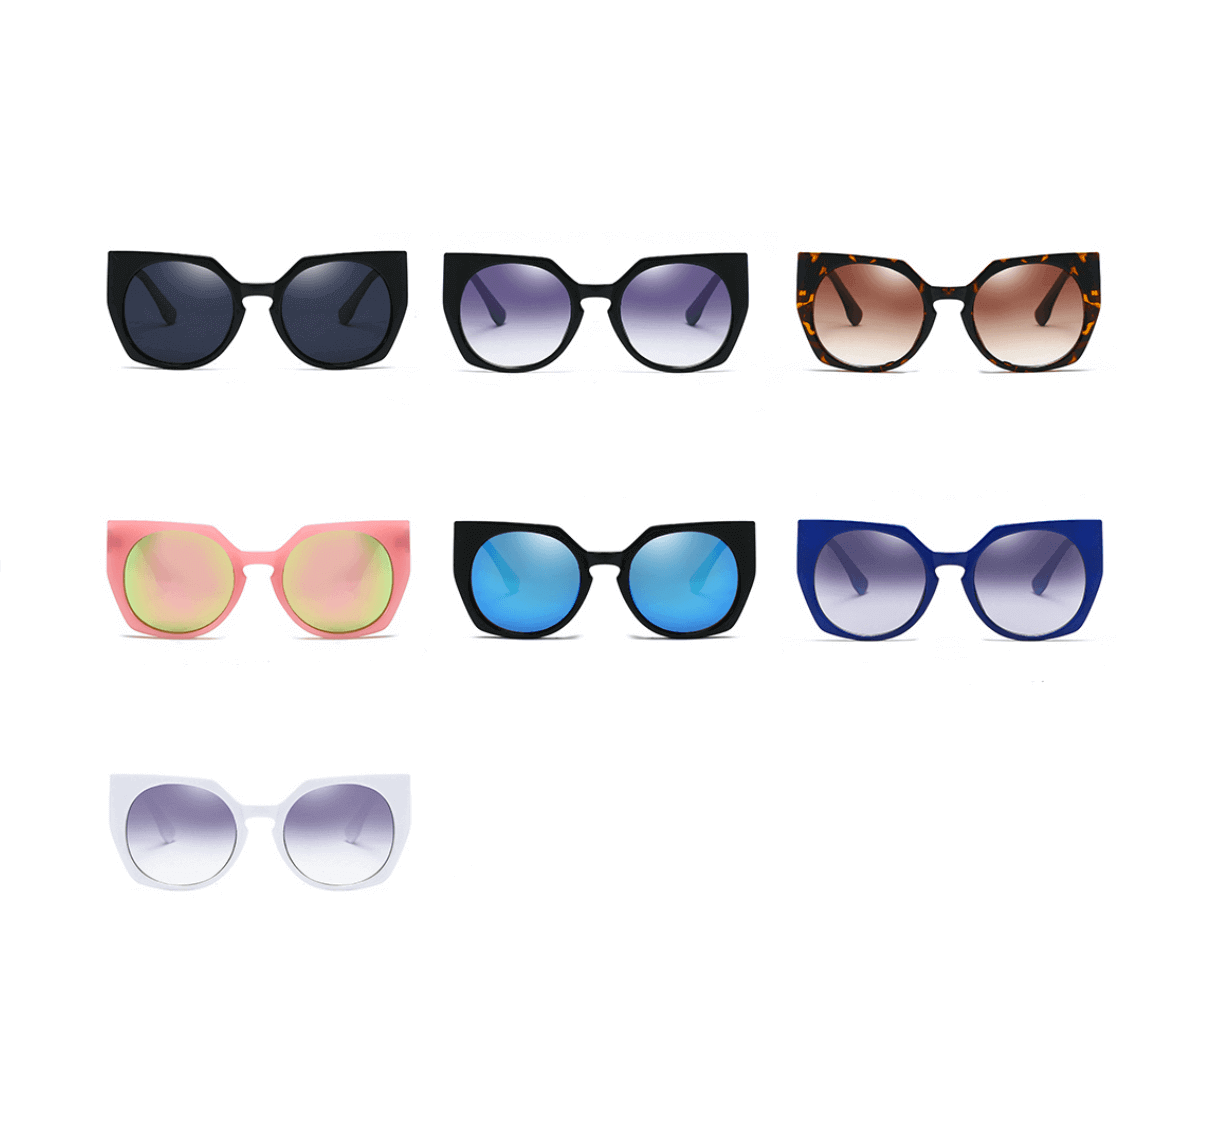 Wholesale Womens Sunglasses, wholesale plastic sunglasses, plastic sunglasses in bulk, Wholesale sunglasses vendors